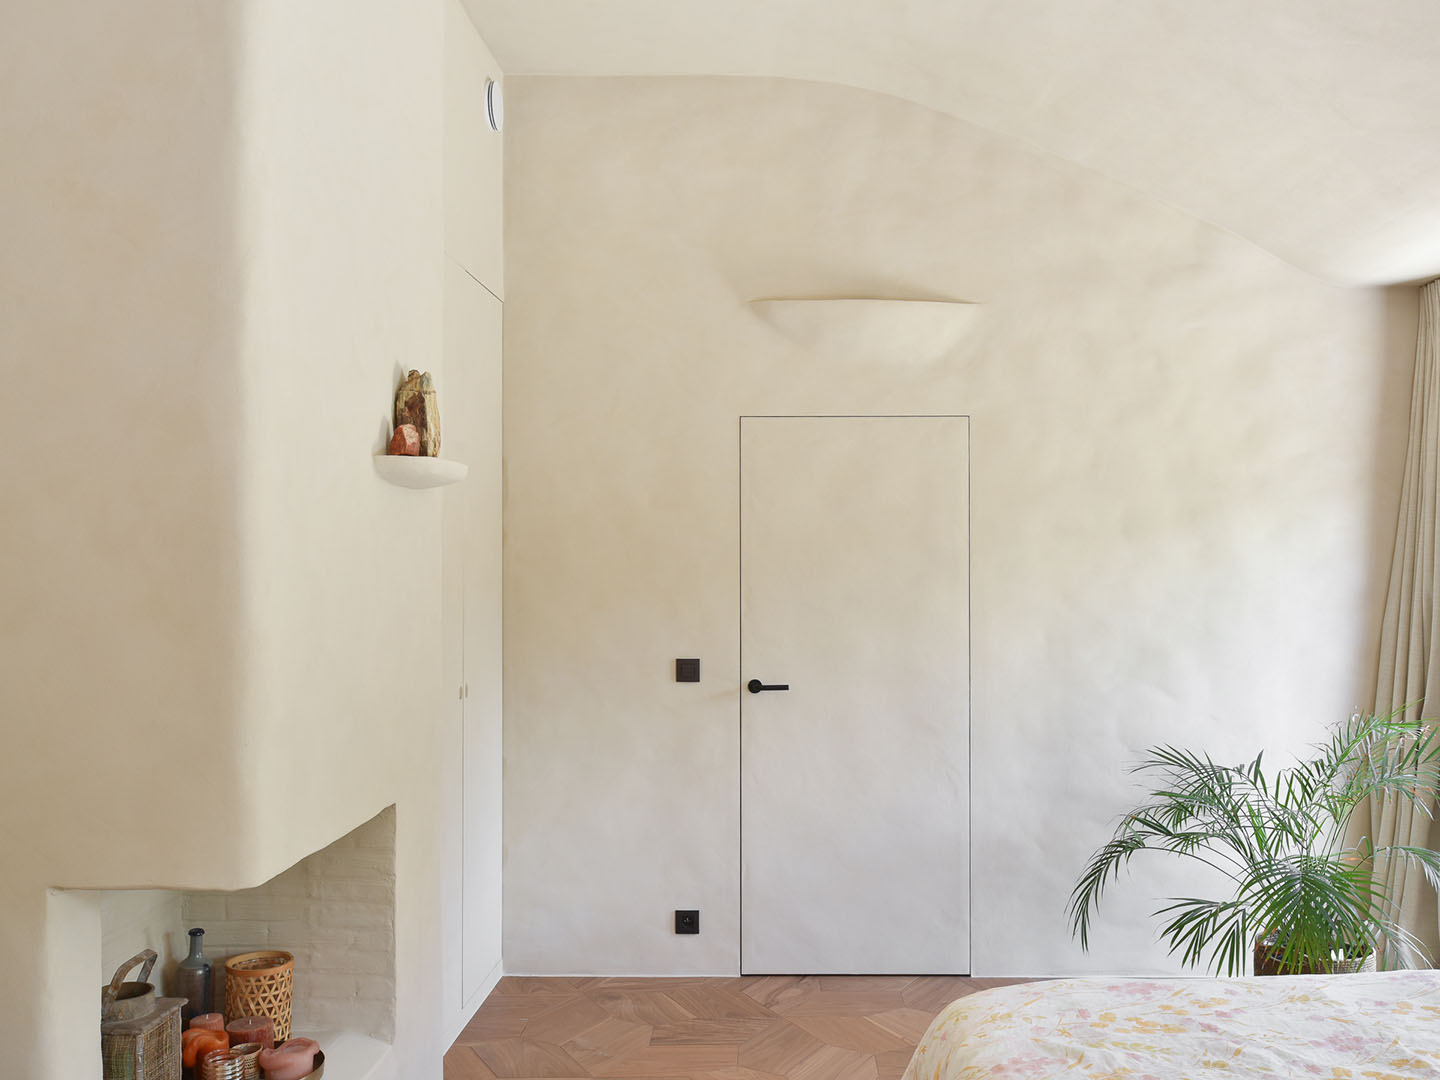 Stijlvolle slaapkamer met ingewerkte deur, afgewerkt met natuurlijke technieken zoals clay structure, Mortex, Aqua sensa® en beton ciré.